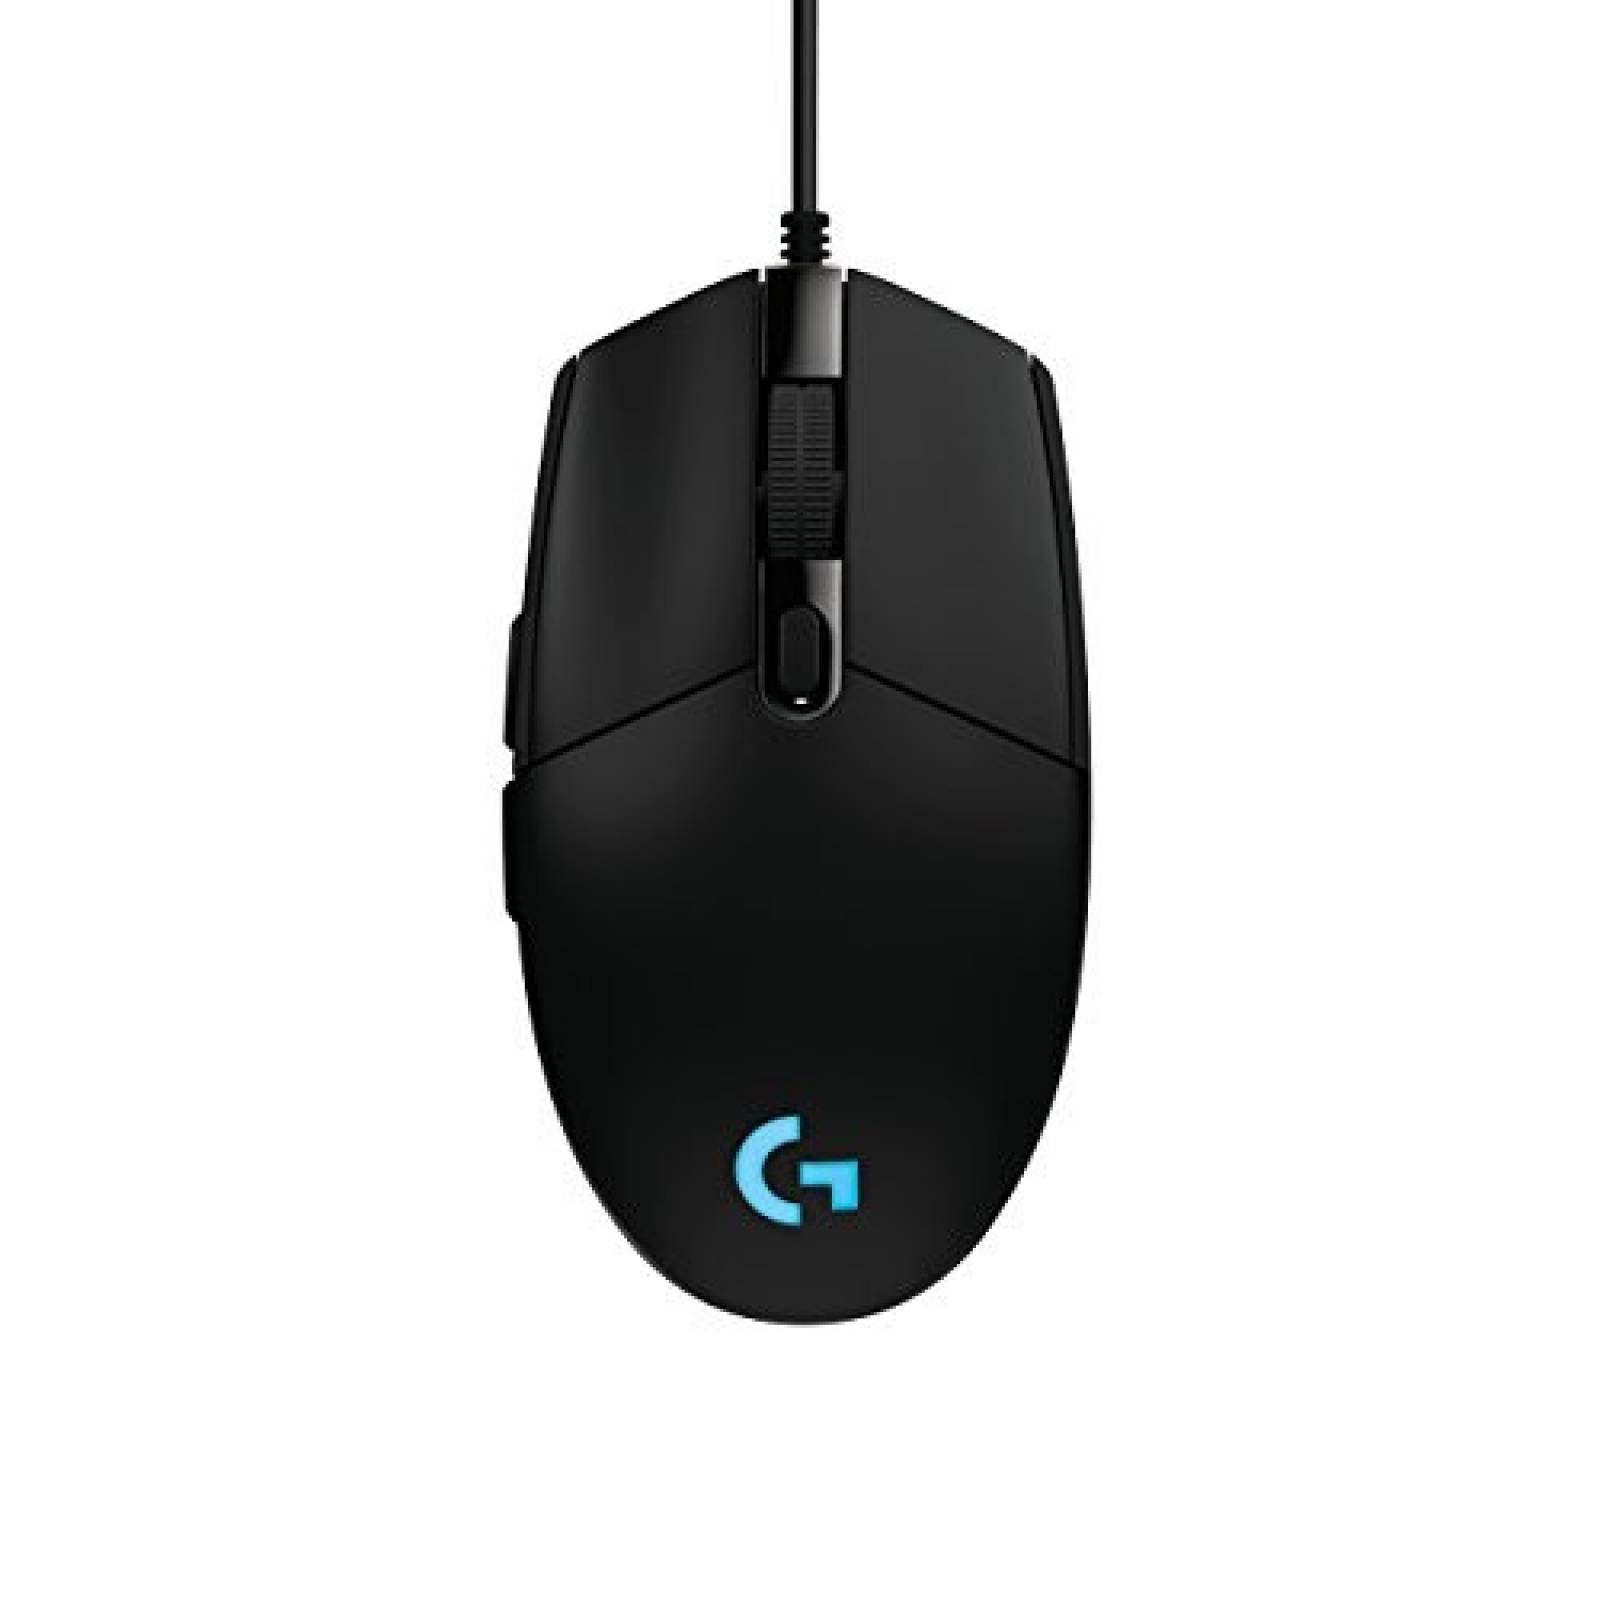 Mouse Logitech G con cable para juegos -Negro